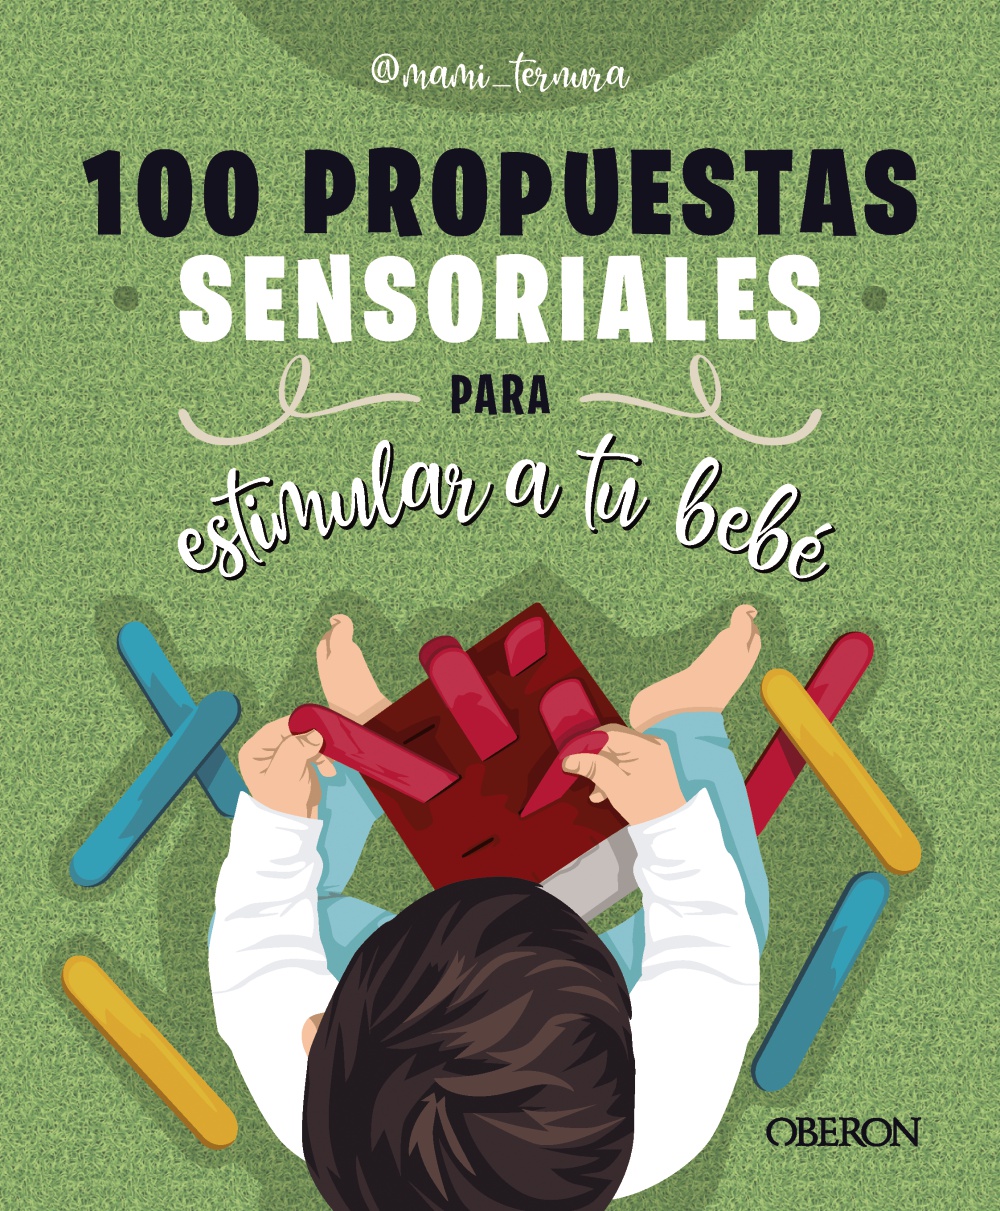 100 propuestas sensoriales para estimular a tu bebé